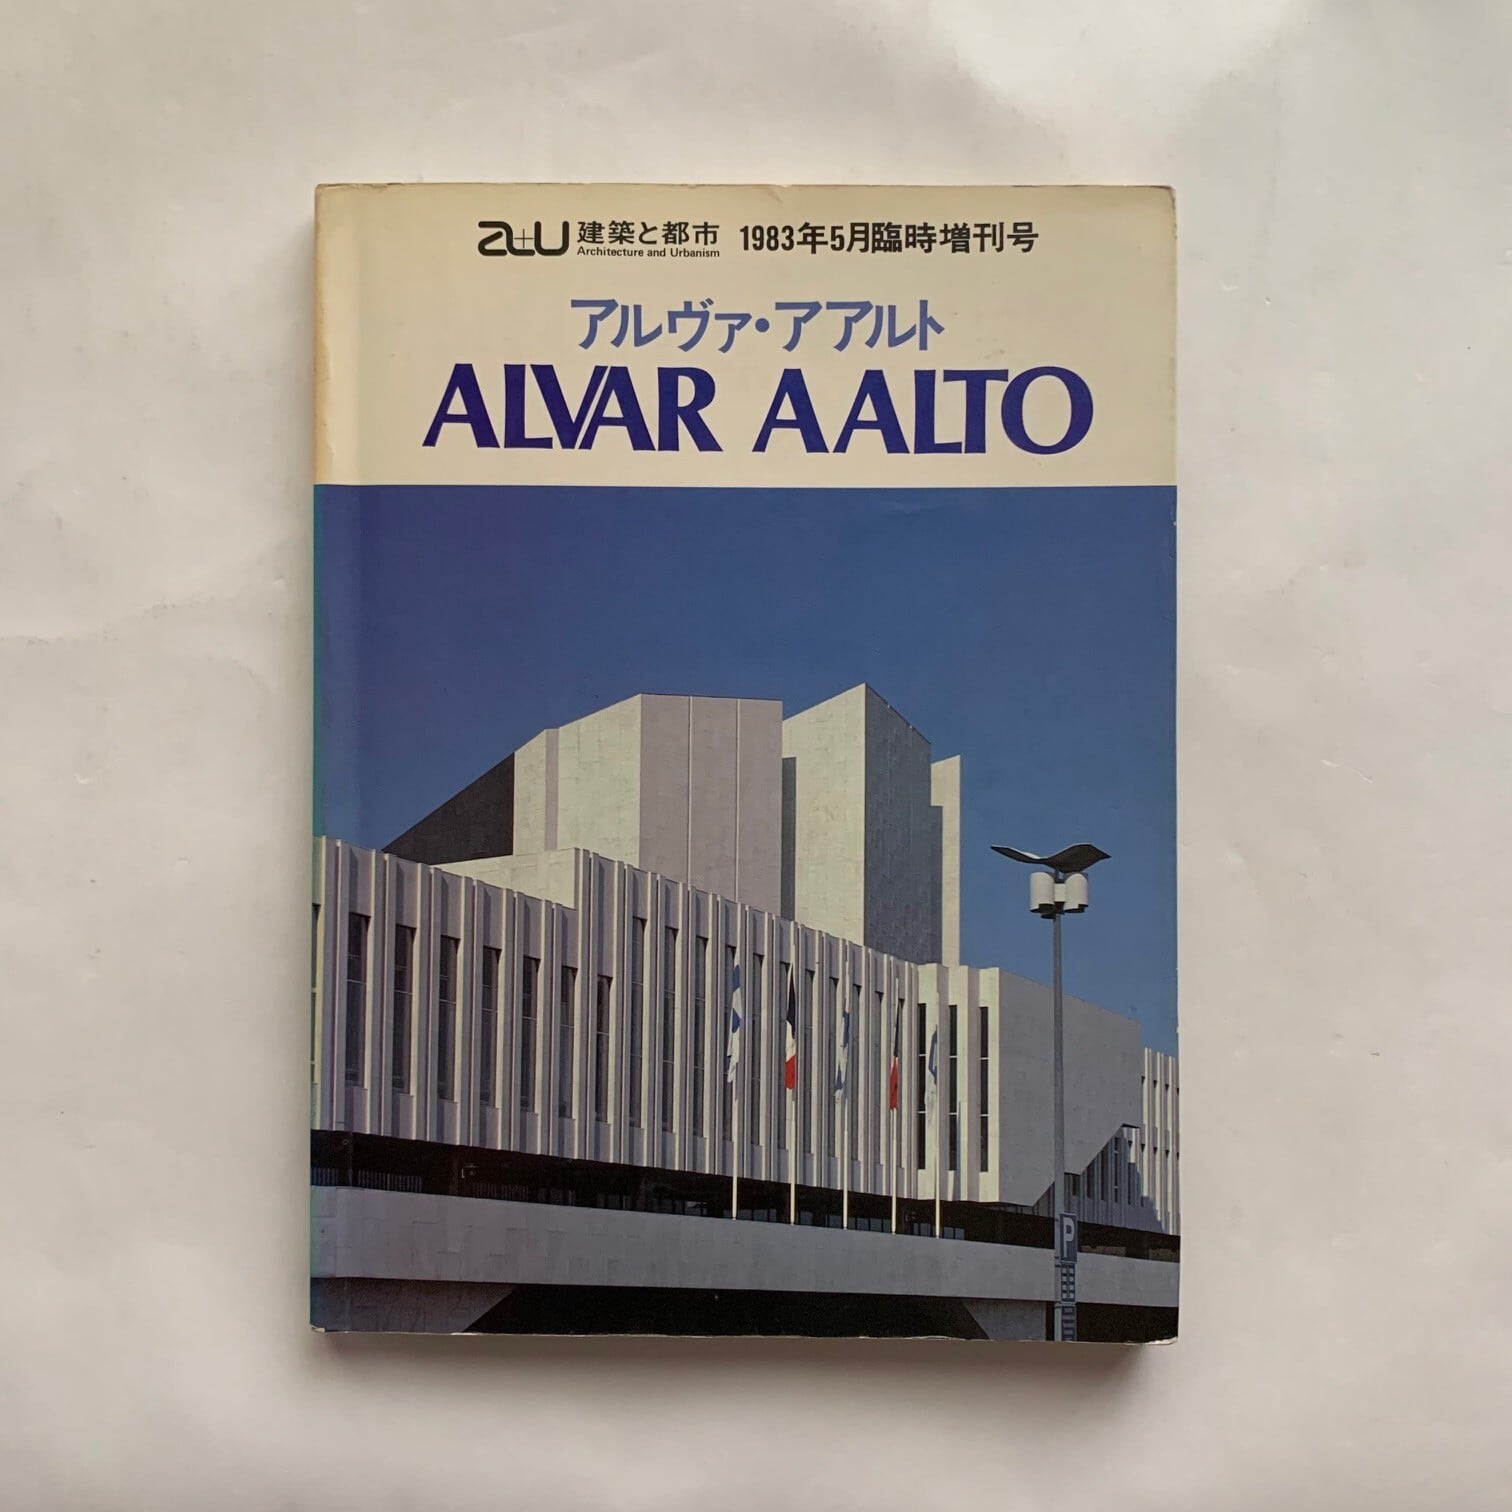 建築と都市 a+u 1983年5月臨時増刊号 アルヴァ・アアルト作品集